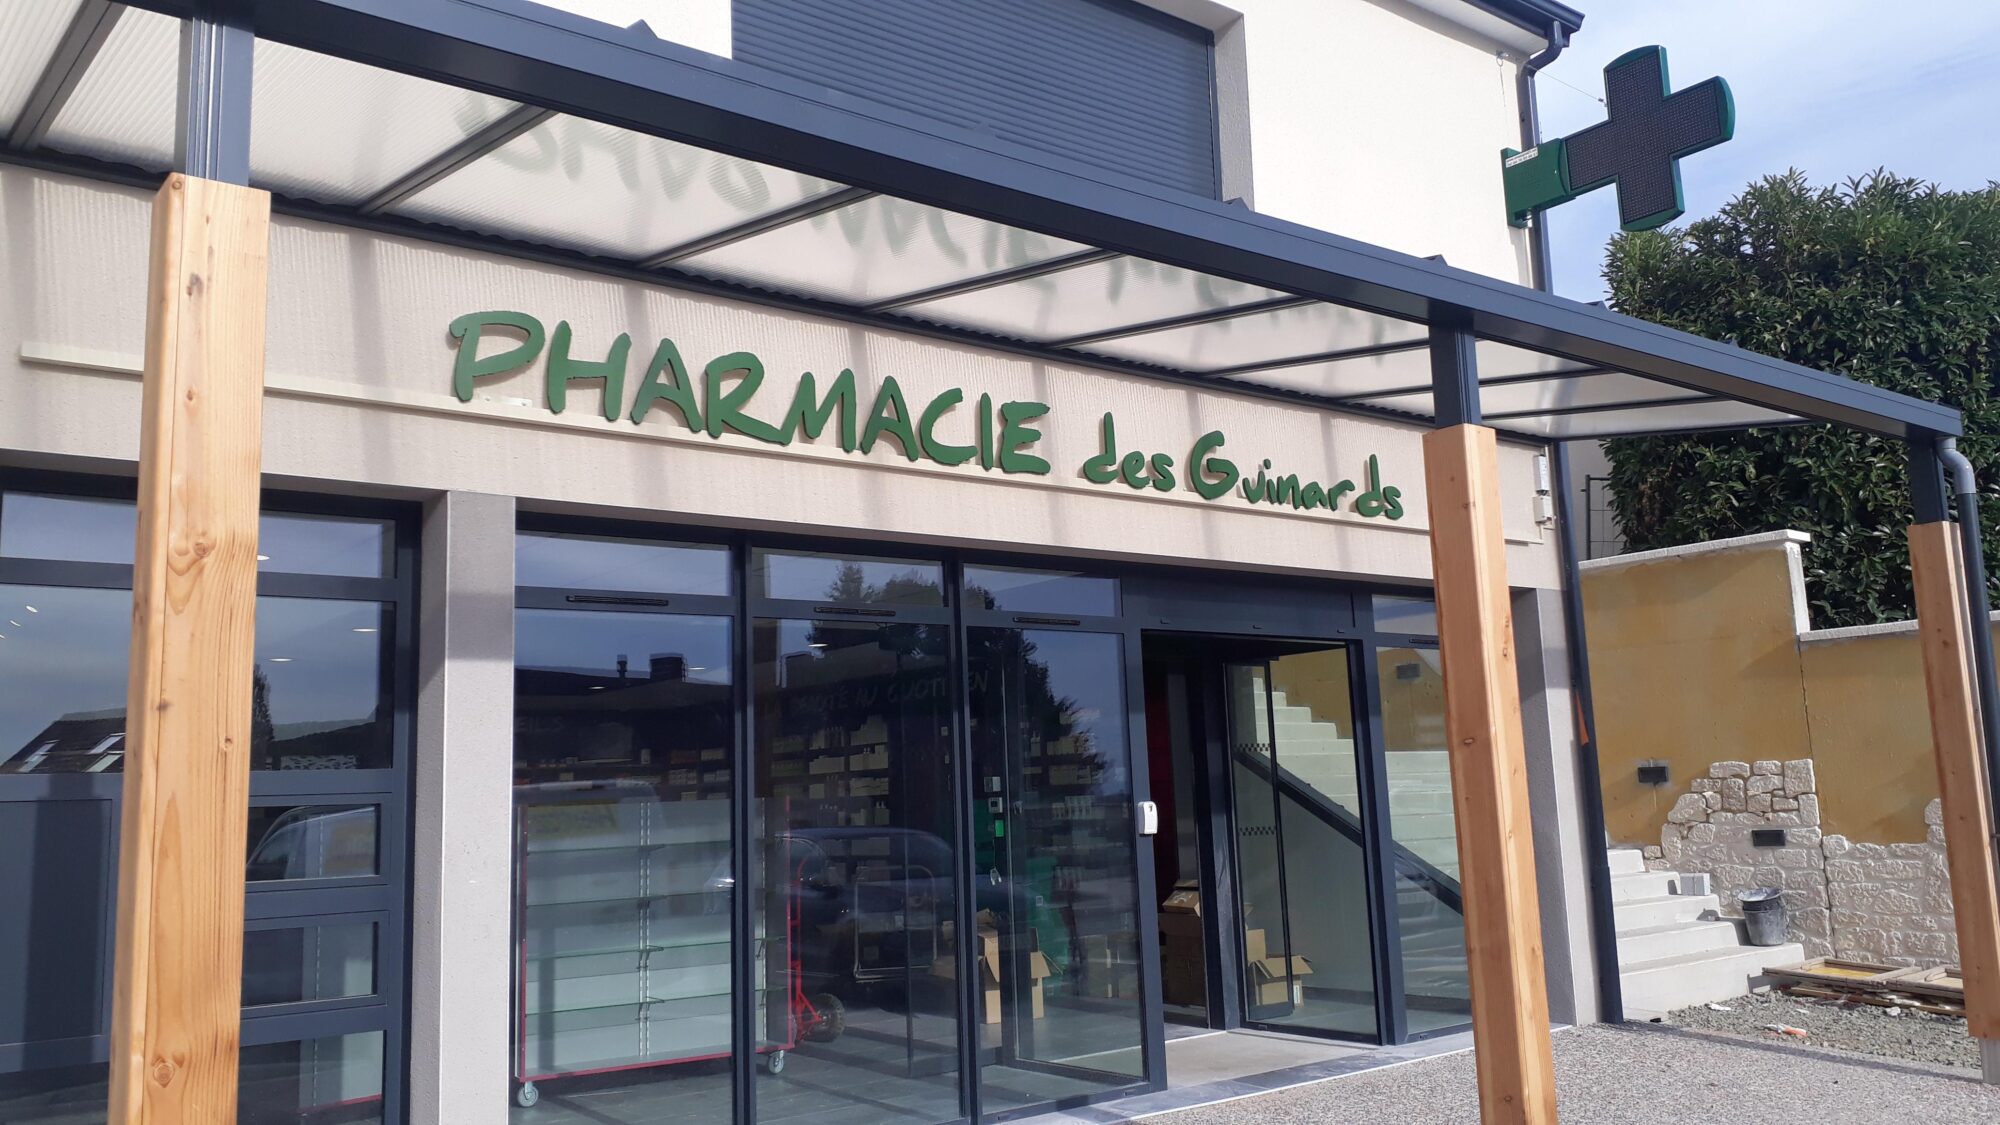 Pharmacie des Guinards